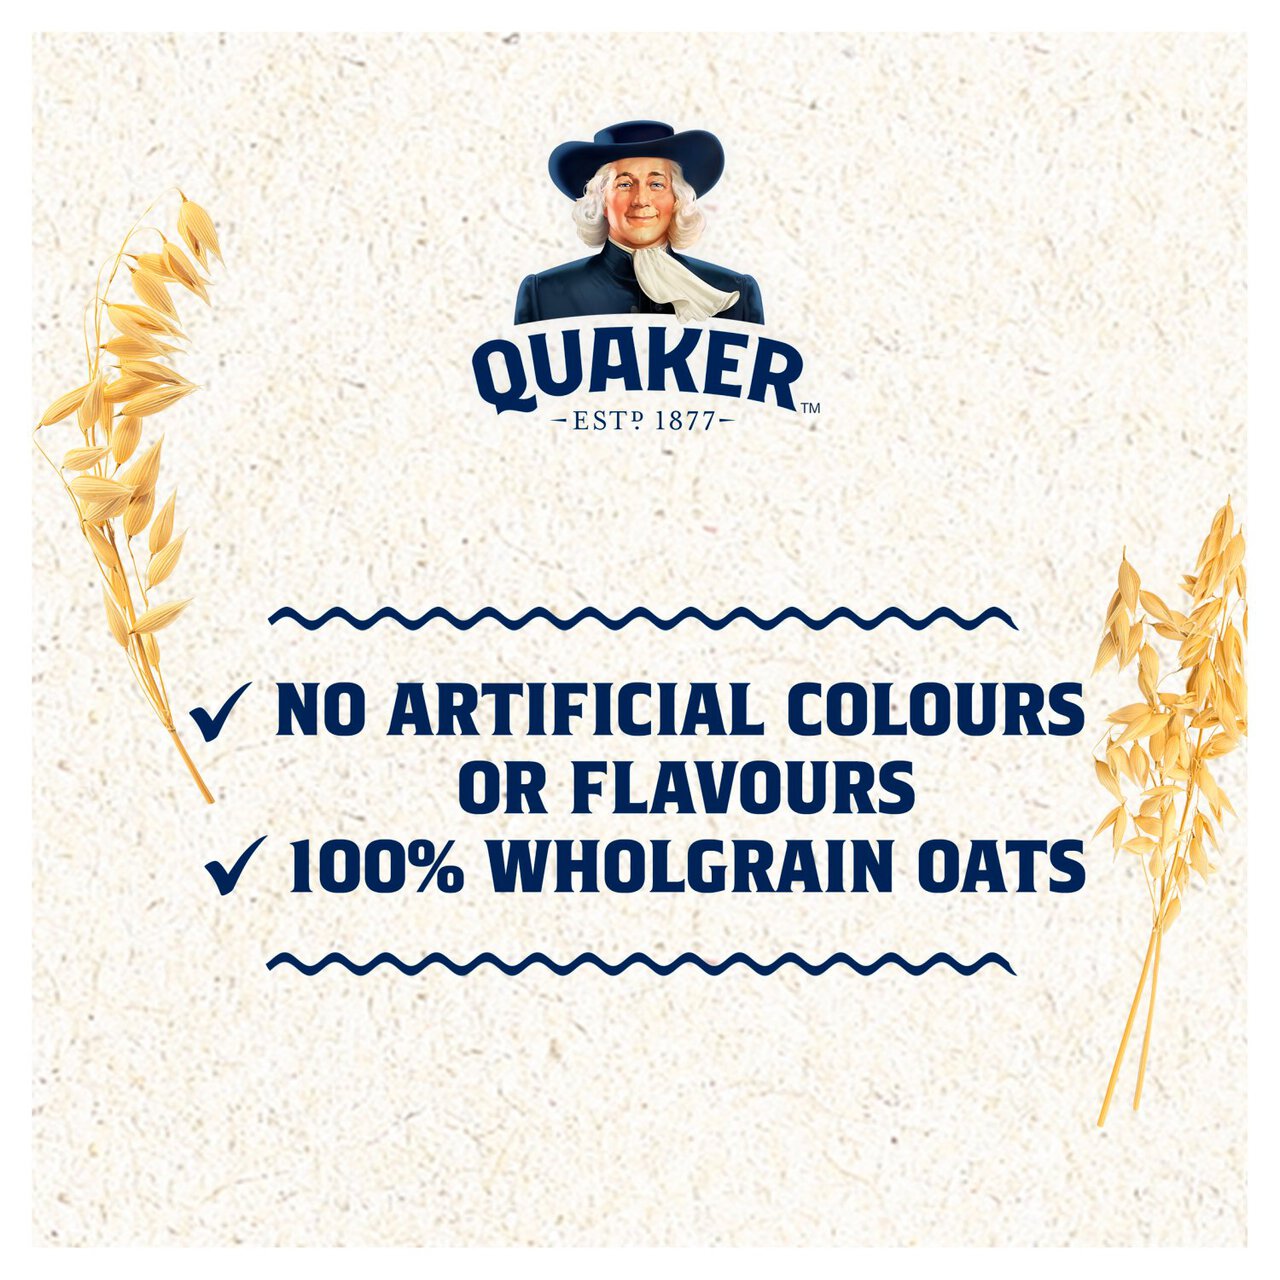 Quaker Oat So Simple Family Pack Golden Syrup Porridge 36g x 20 per pack